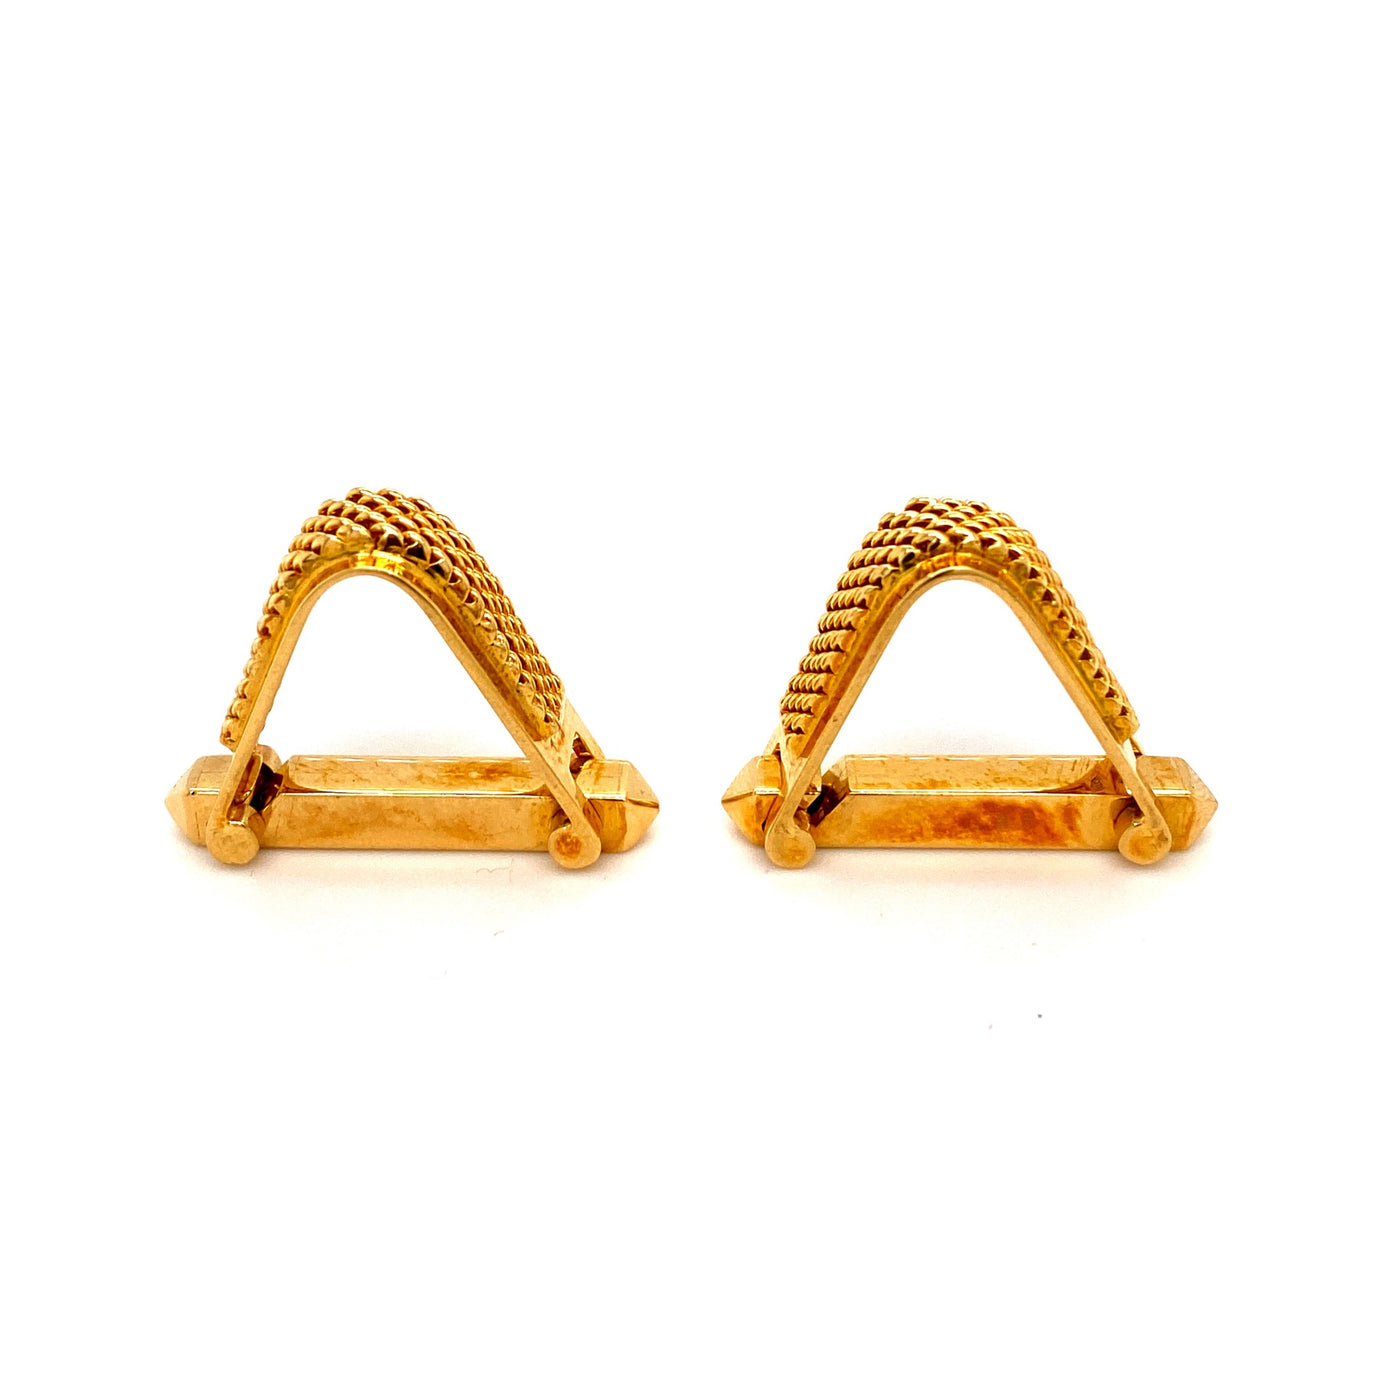 Treasured Triangle - Goldene Manschettenknöpfe Triangel